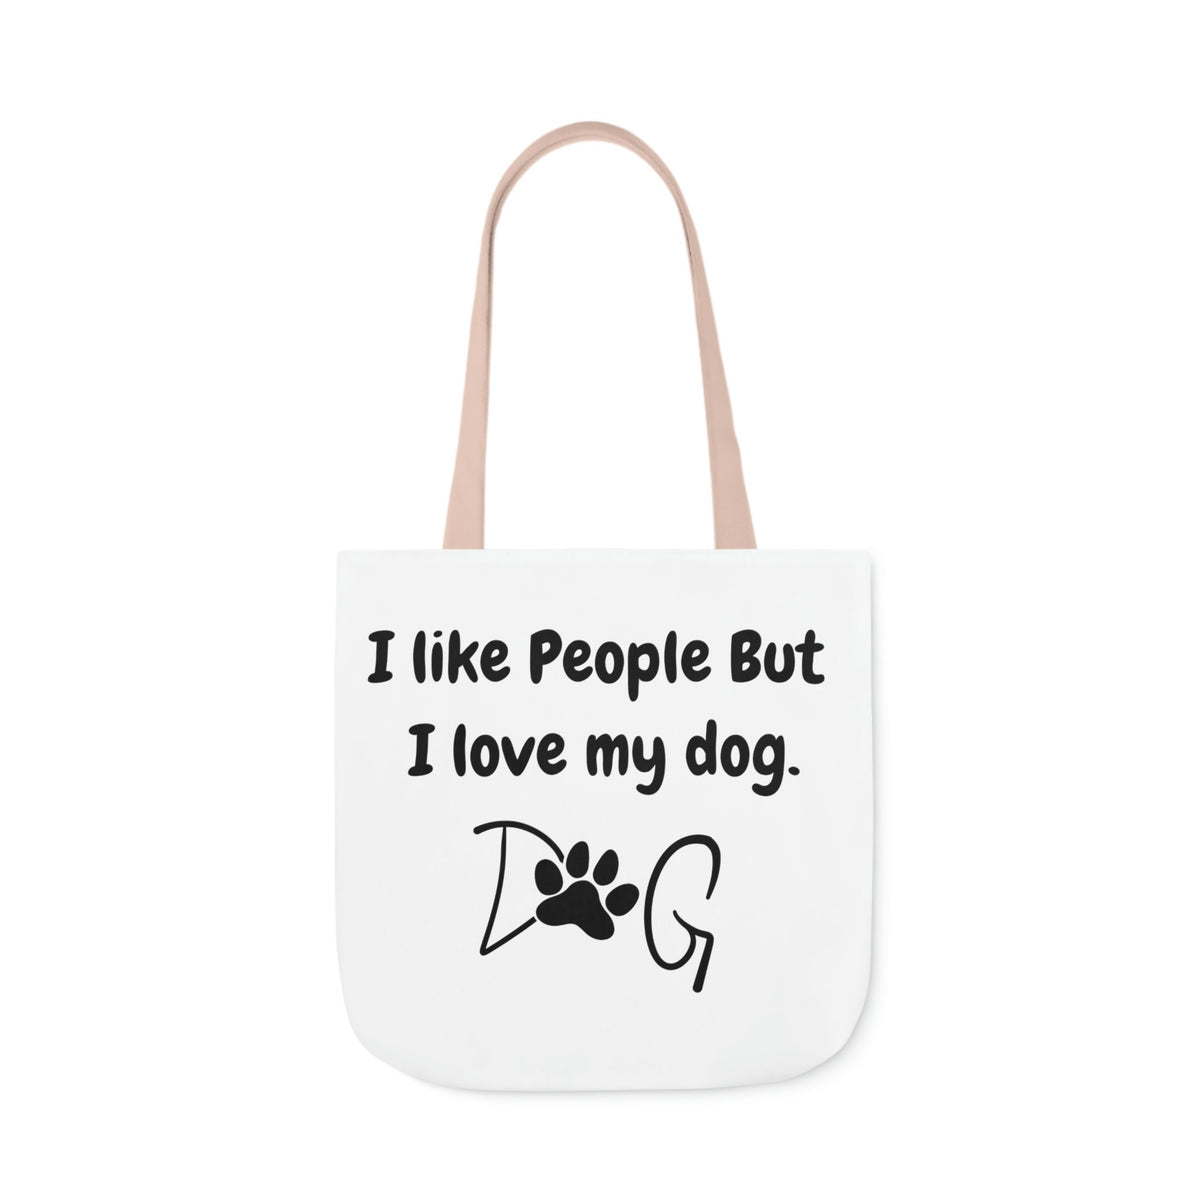 I Like People But I LOVE MY Dog (Paw) Tote Bag, Dog Lover Book Bag, Dog Paw Cute Tote Bag, Shoulder Bag, Beach Bag, Pool Bag, Dog Mama Bag